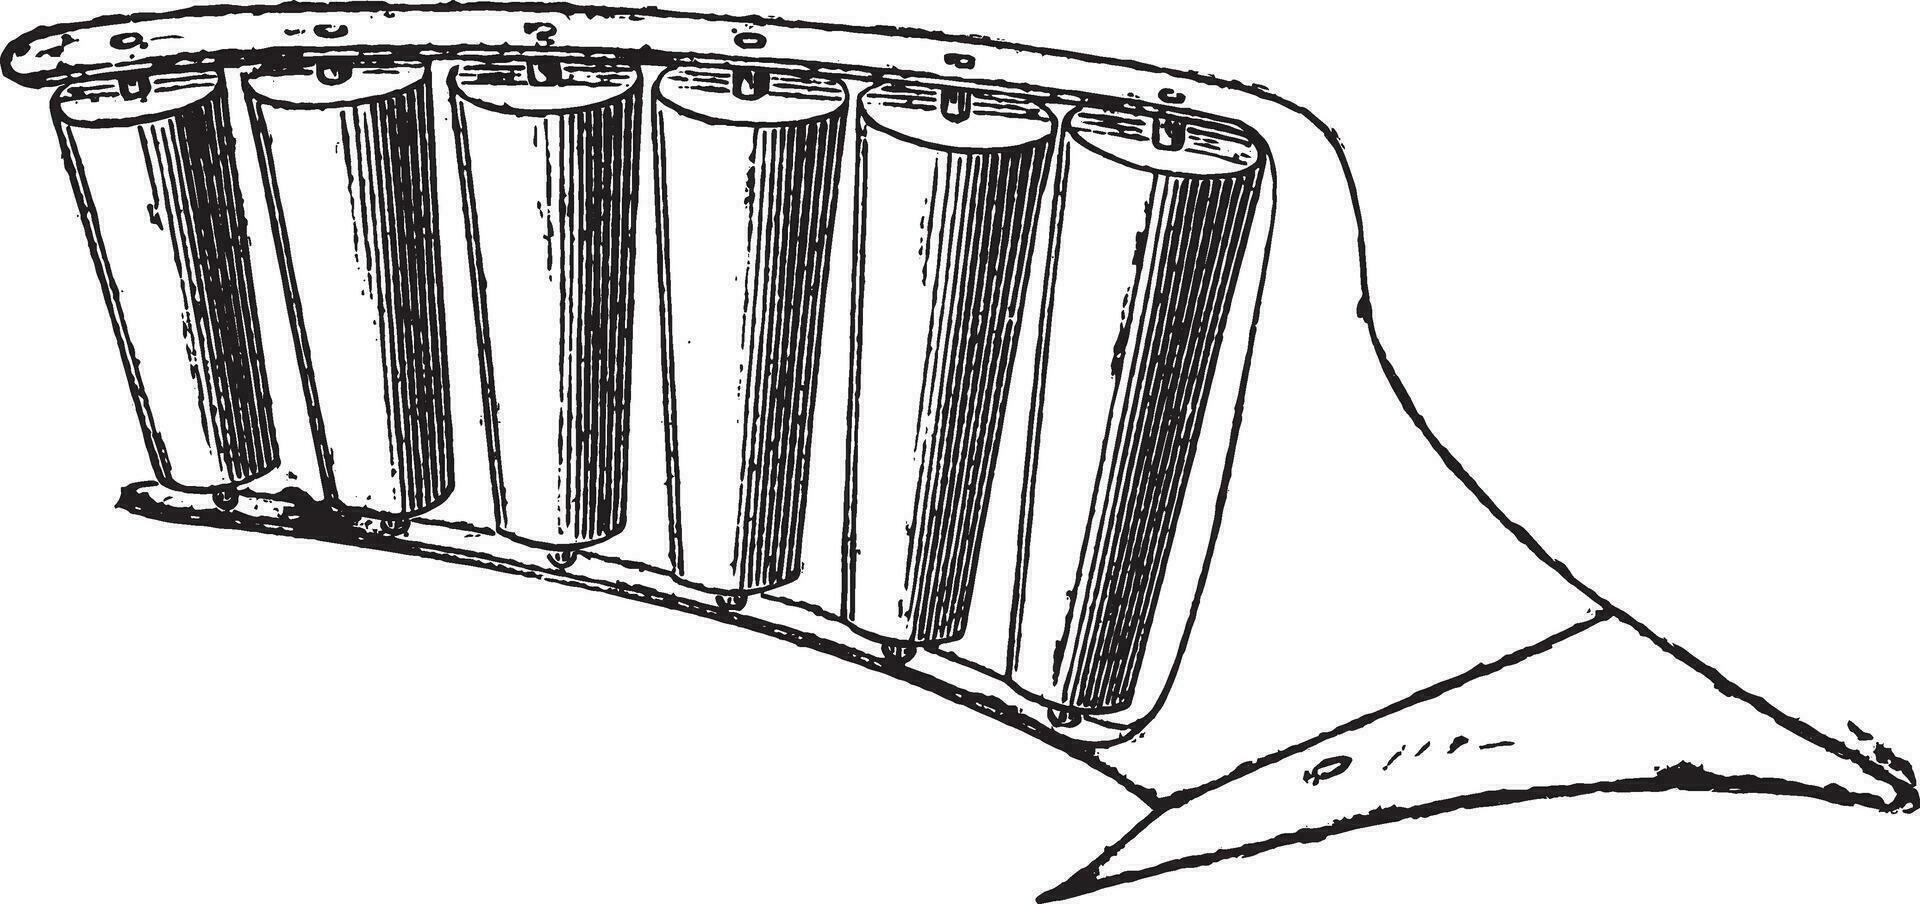 vertedera del arado con afilado rodillos, Clásico grabado. vector